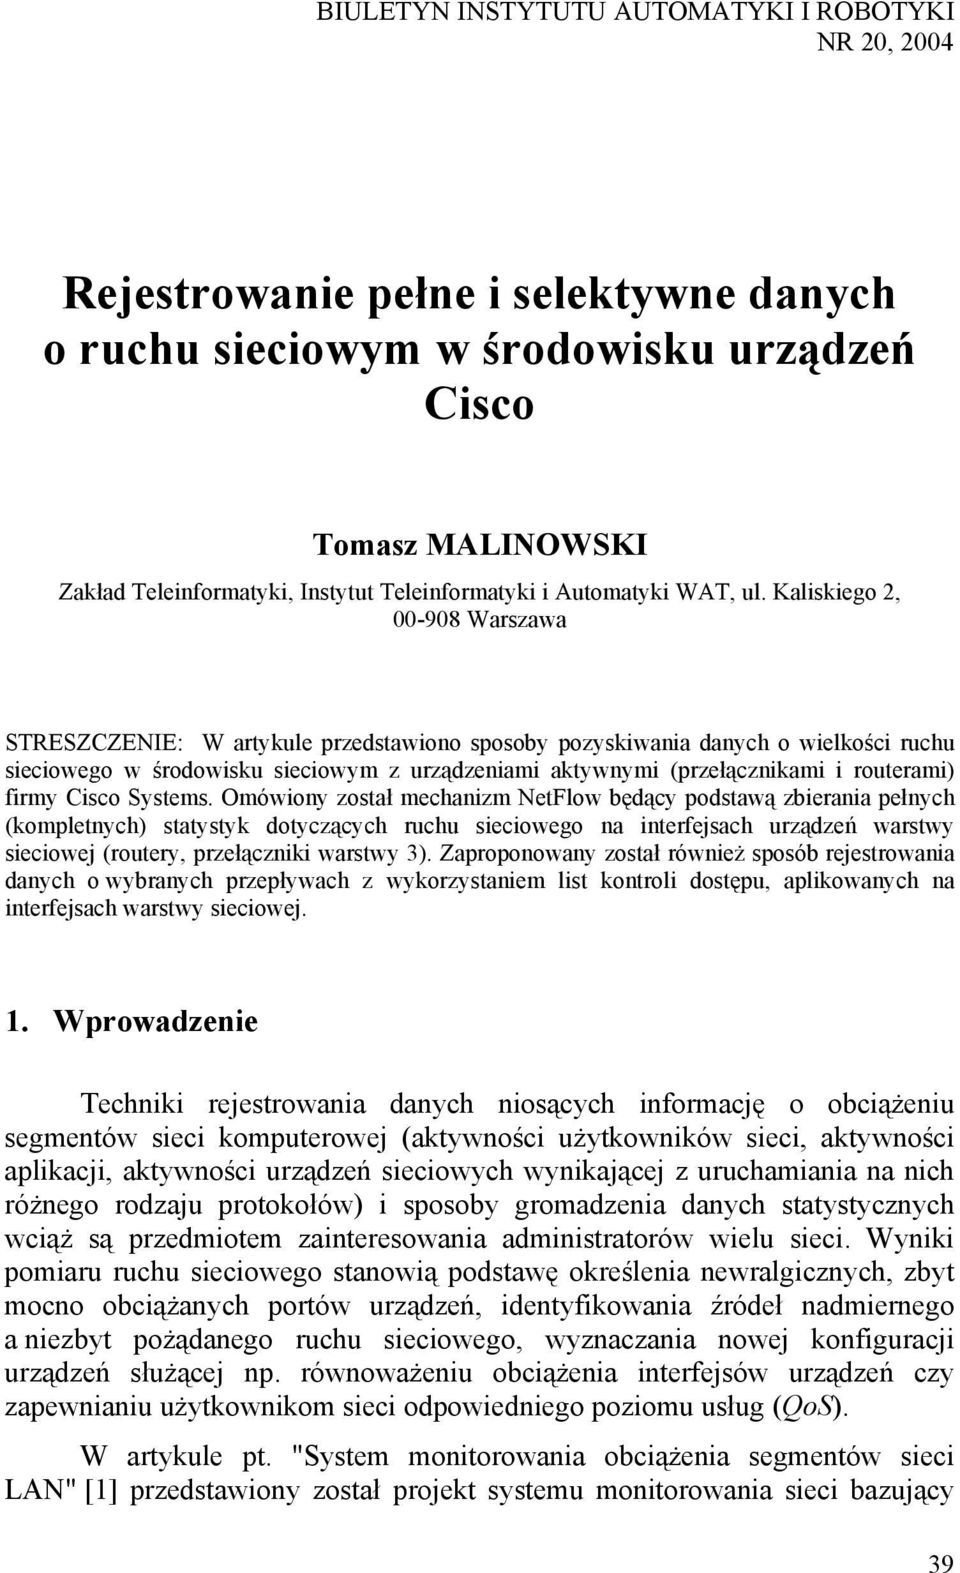 Kaliskiego 2, 00-908 Warszawa STRESZCZENIE: W artykule przedstawiono sposoby pozyskiwania danych o wielkości ruchu sieciowego w środowisku sieciowym z urządzeniami aktywnymi (przełącznikami i